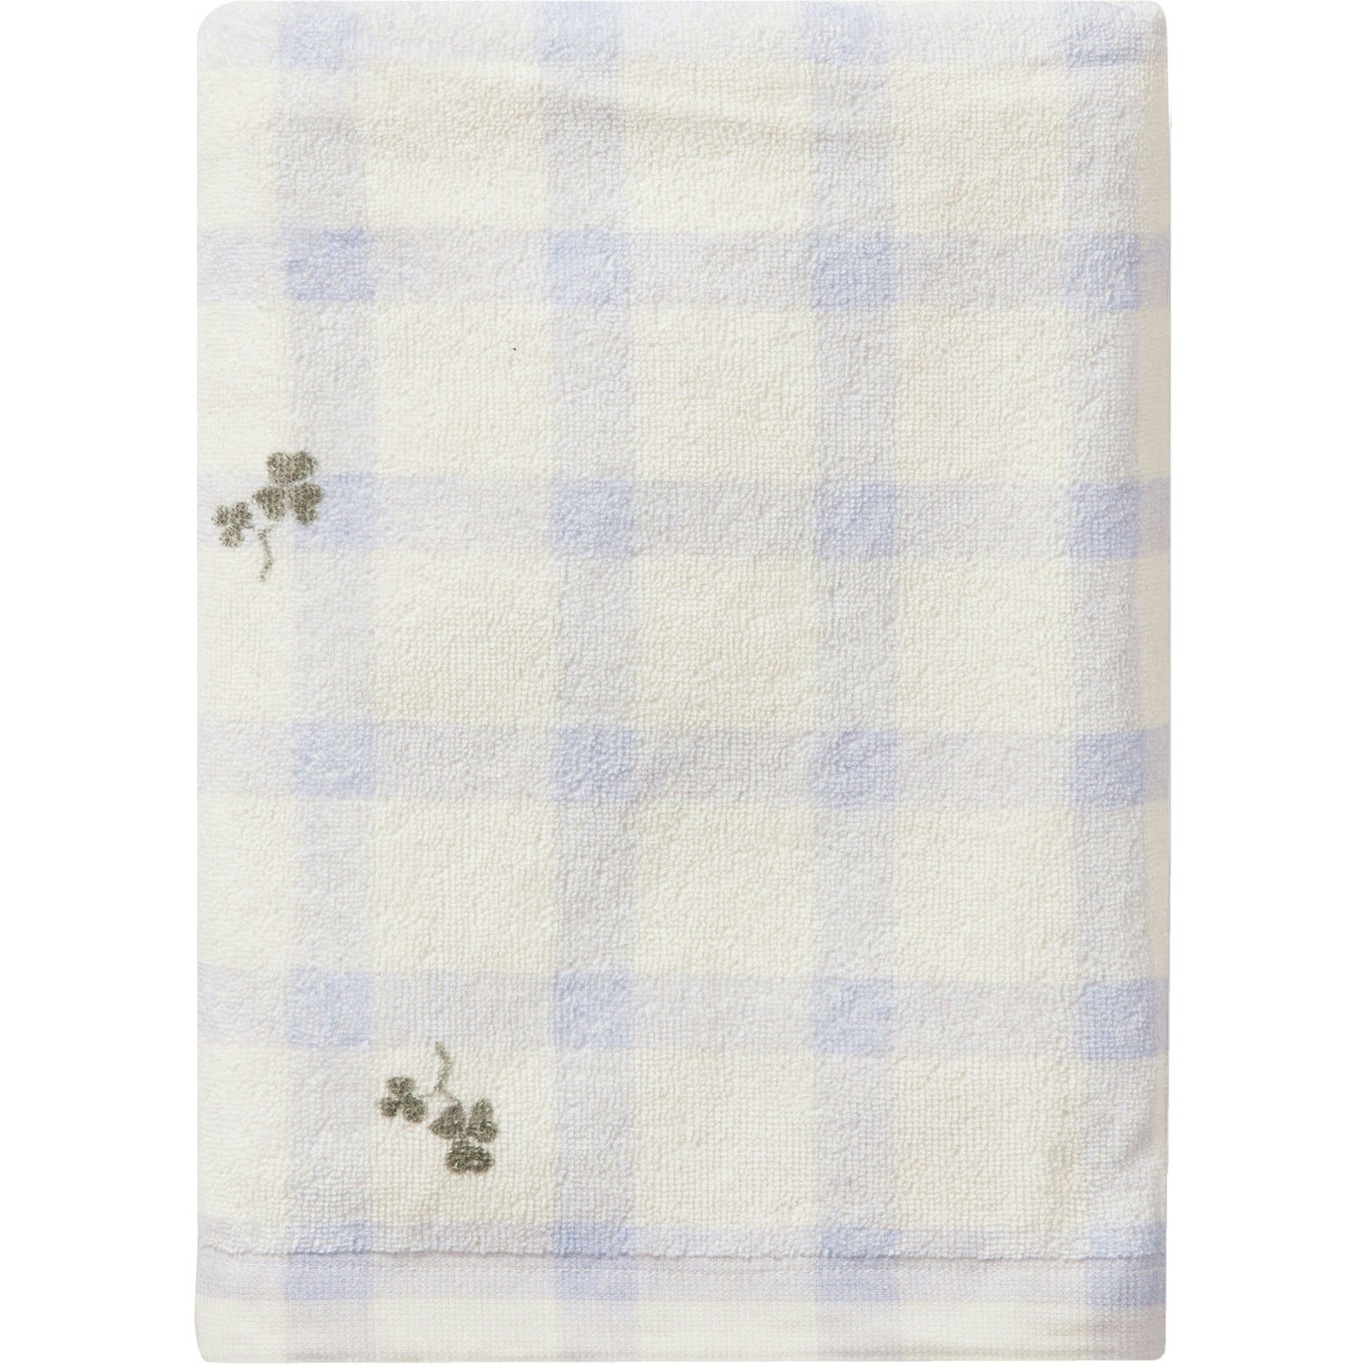 Gingham Sorrel Blue Bath Towel, 70x140 cm